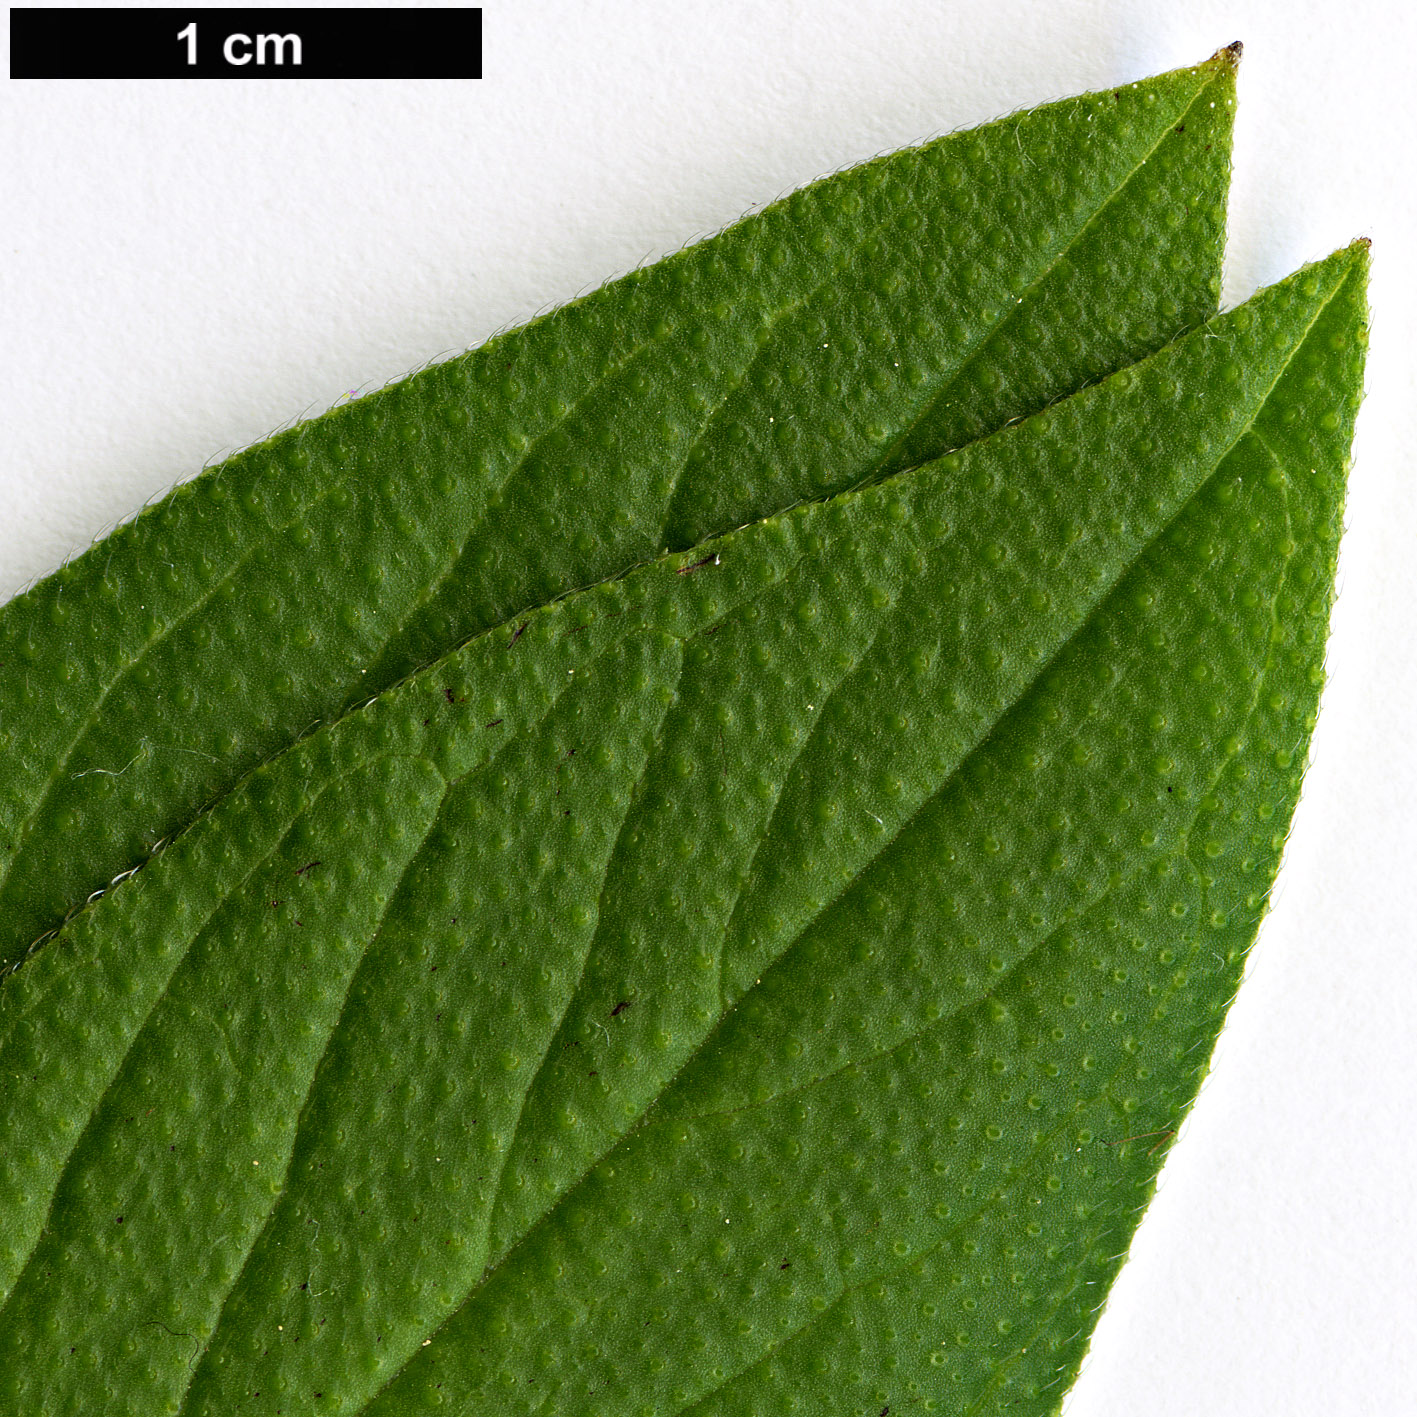 High resolution image: Family: Boraginaceae - Genus: Echium - Taxon: hypertropicum